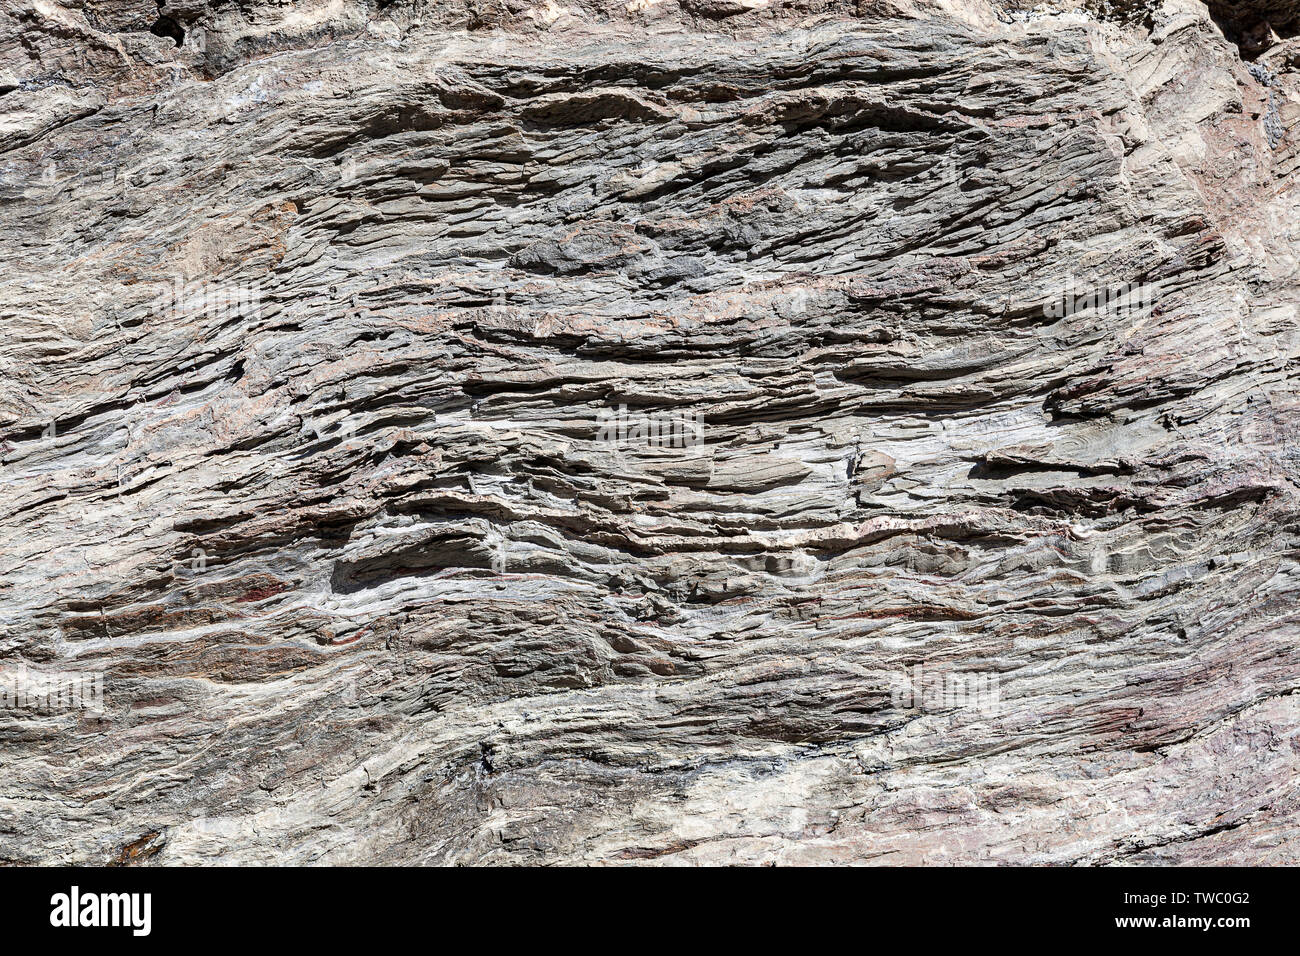 La texture de la pierre naturelle. Texture naturelle des roches de surface, où vous pouvez voir les lignes dessinées dans le long du temps. Peut être utilisé comme arrière-plan. Banque D'Images